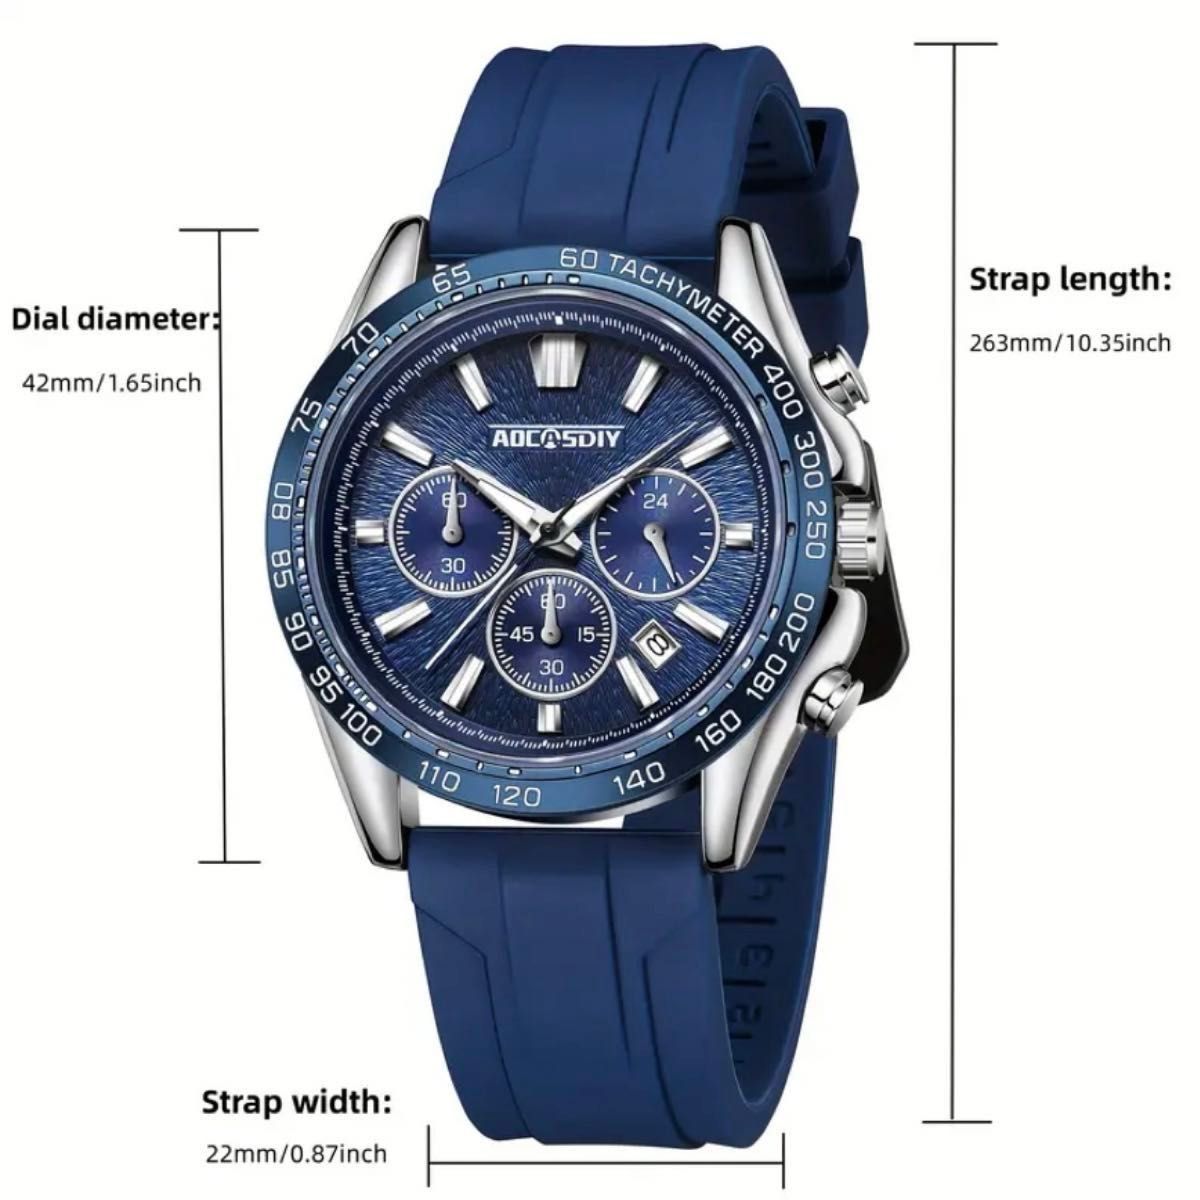 新品 AOCASDIY オマージュクロノグラフウォッチ ラバーストラップ メンズ腕時計 ブルー R42